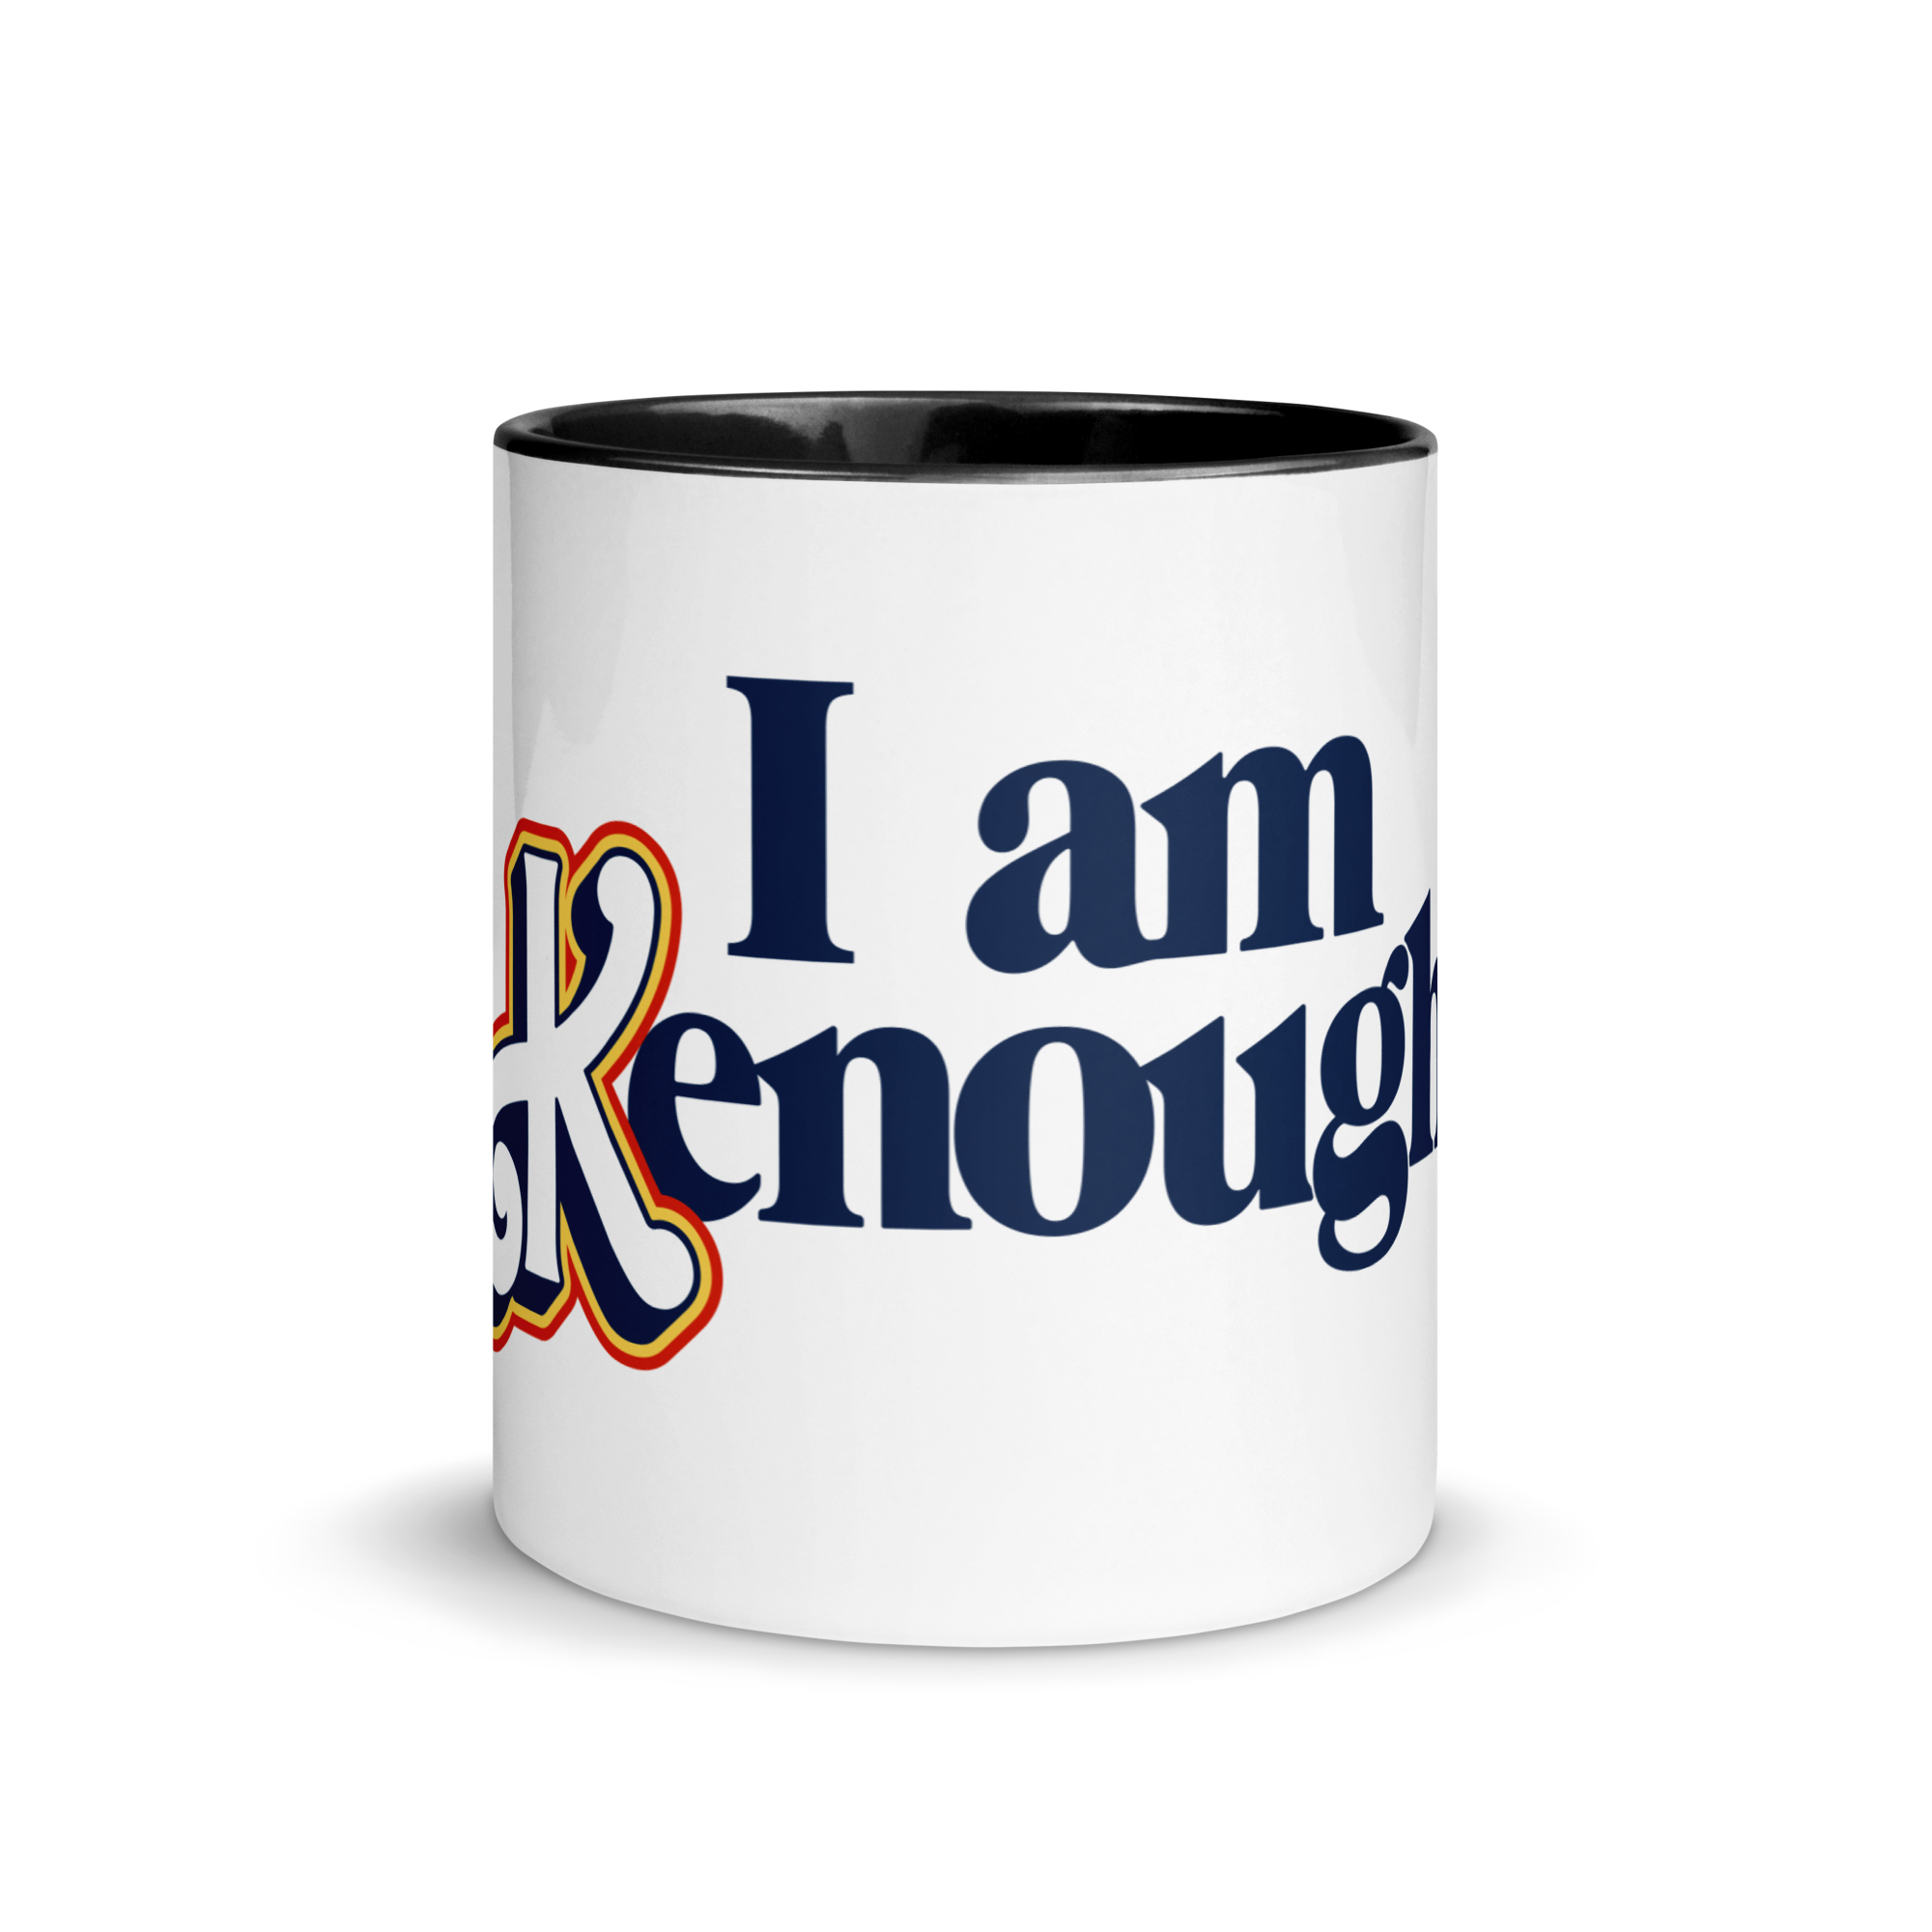 Barbie The Movie “I Am Kenough” Mug